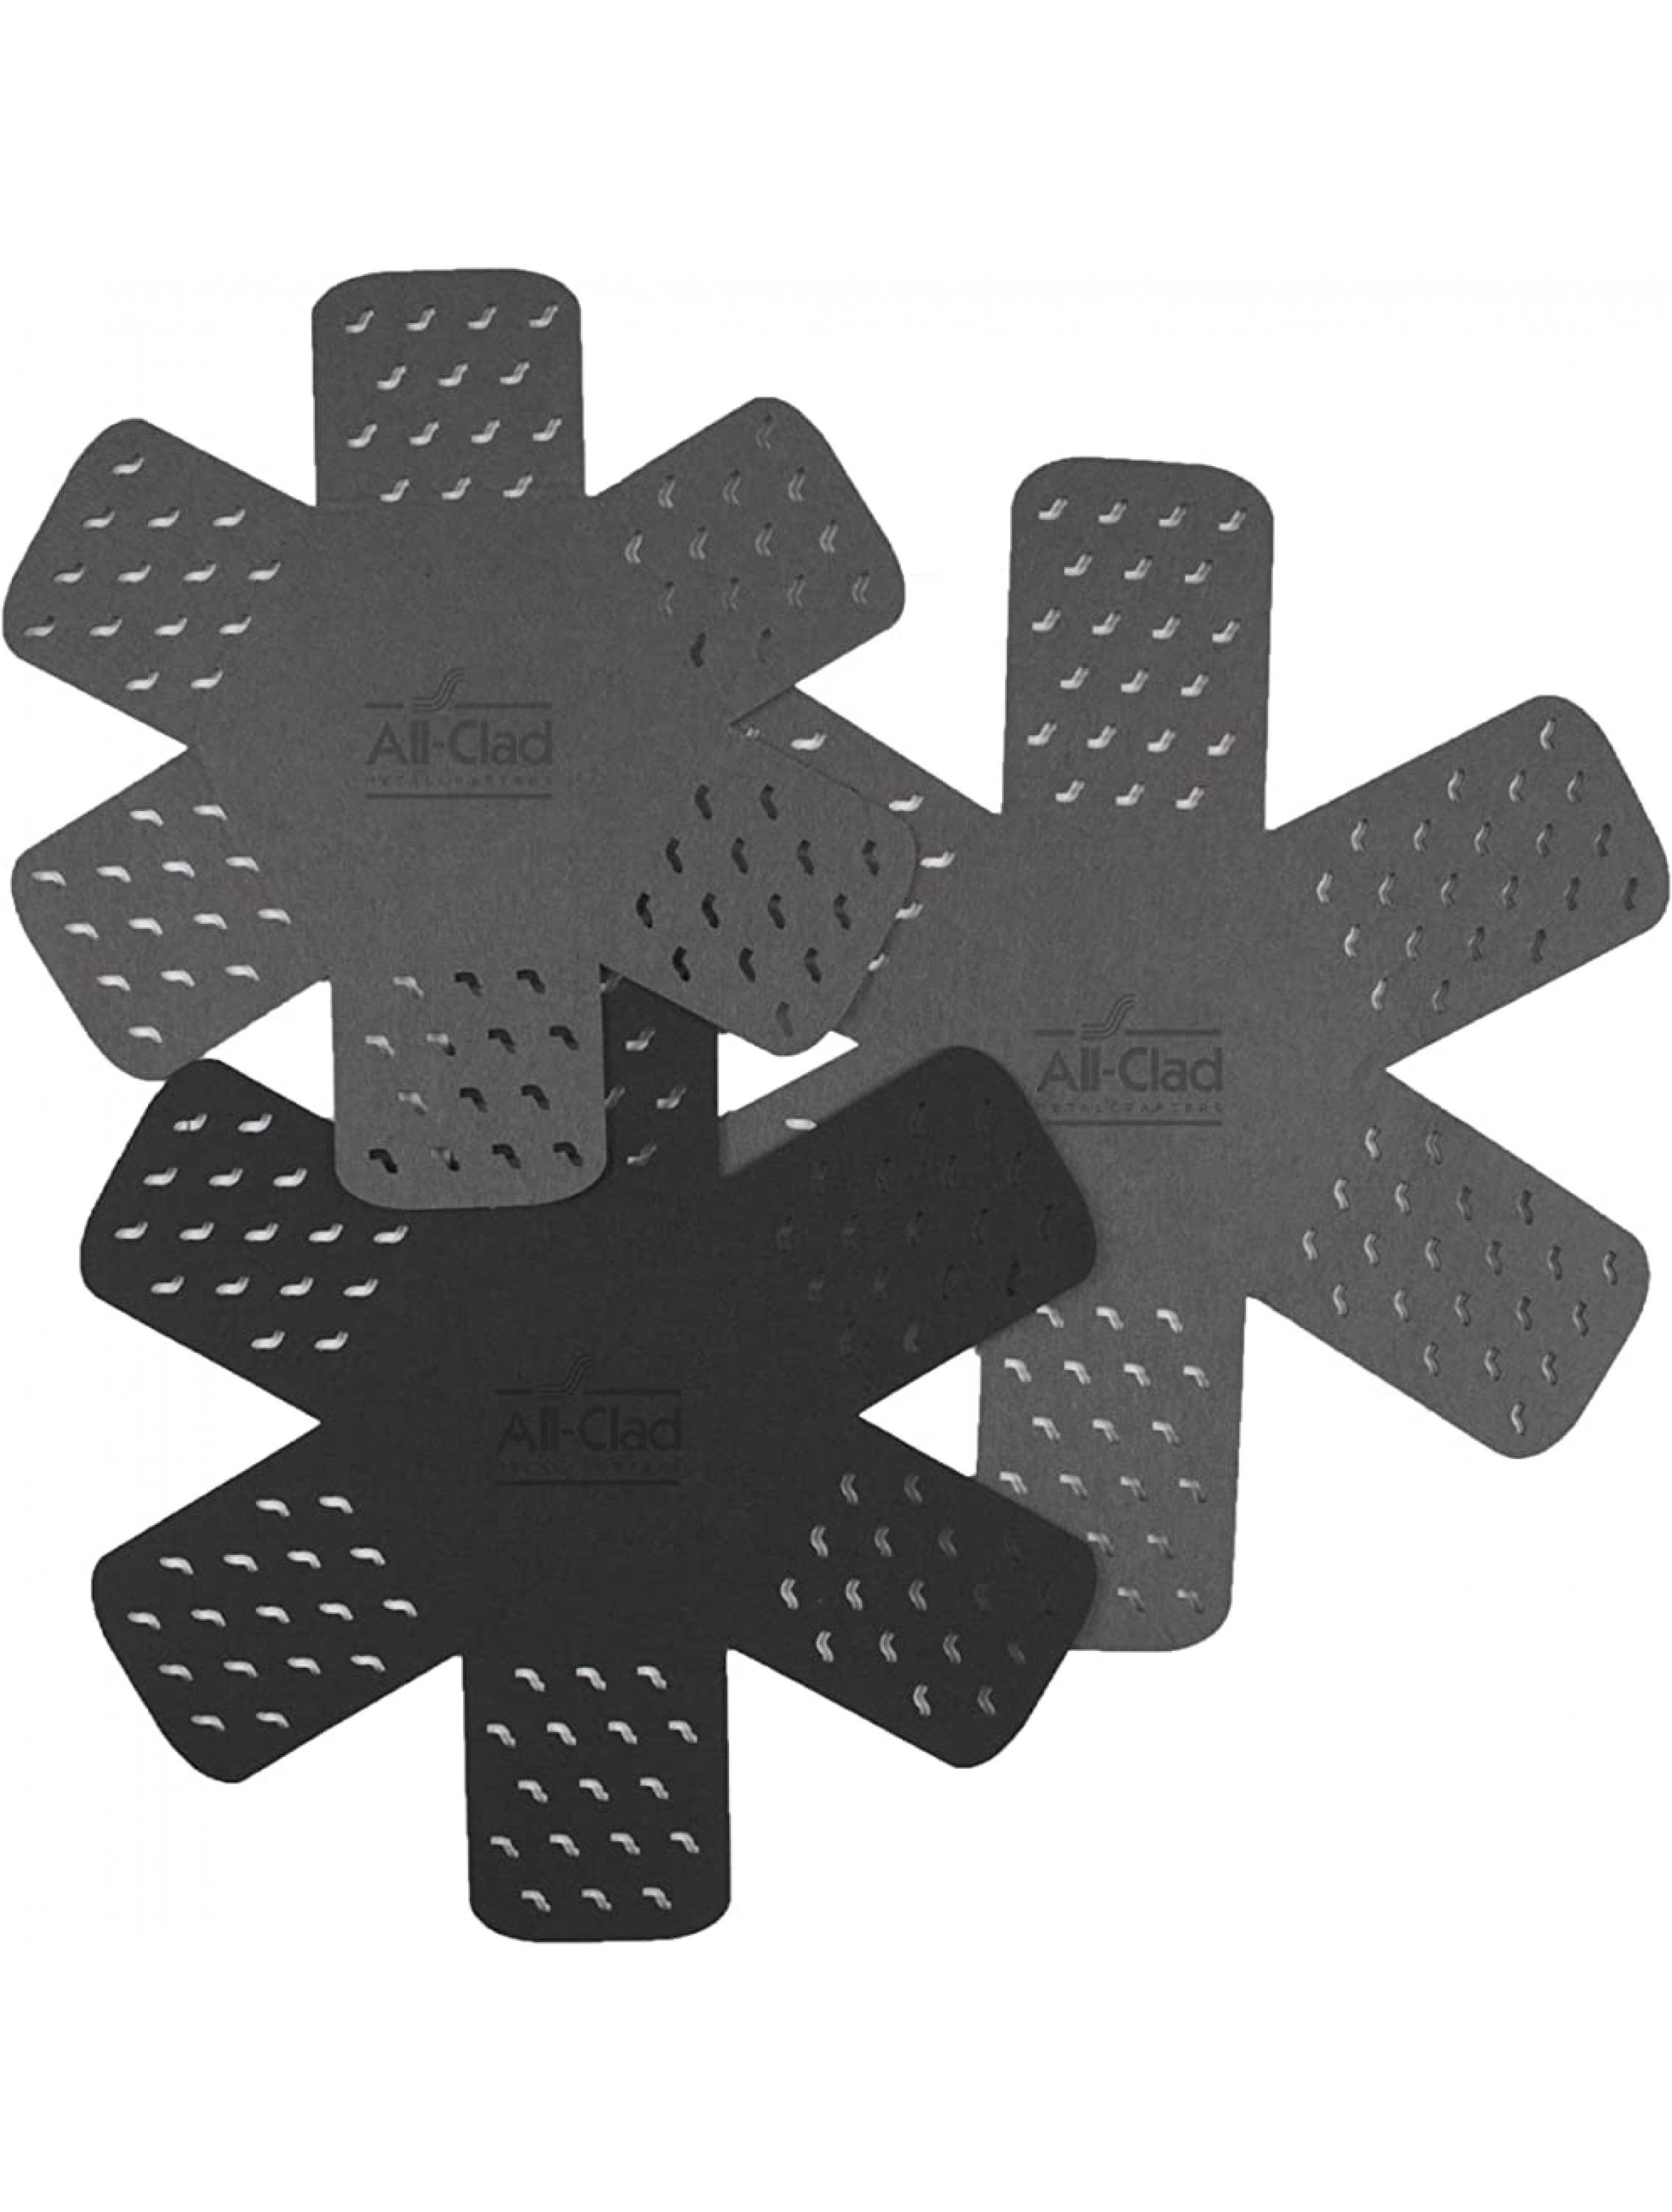 All-Clad Textiles 3-Piece Set cookware protectors Black Grey 3 Count - BTVJHXUH8